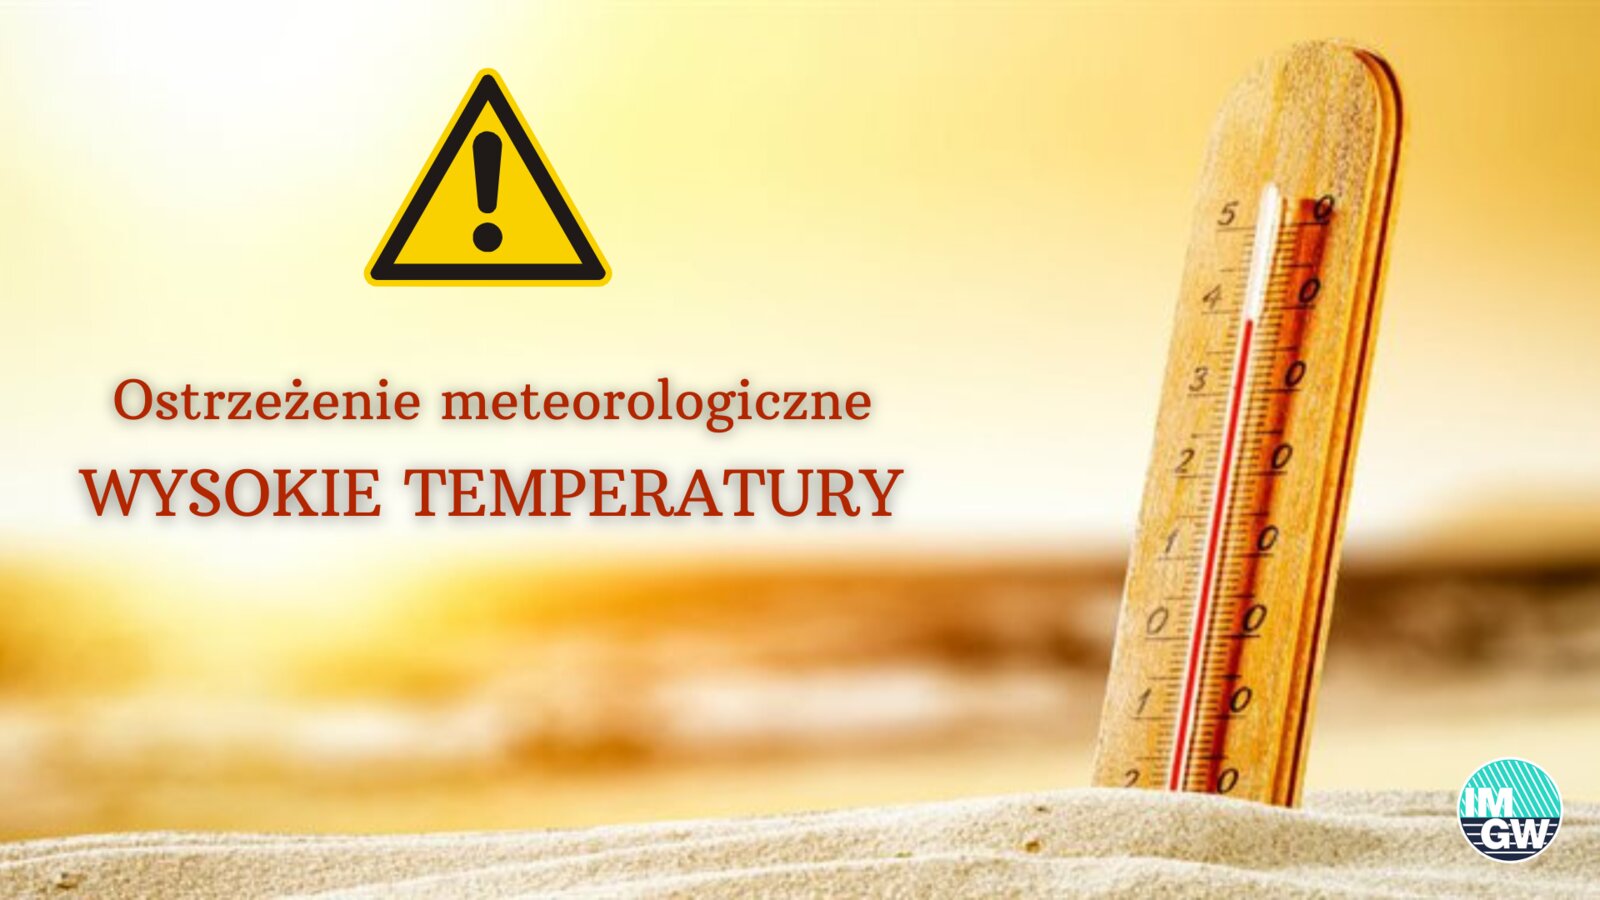 zdjęcie przedstawia termometr i ostrzezenie przed wysokimi temperaturami 